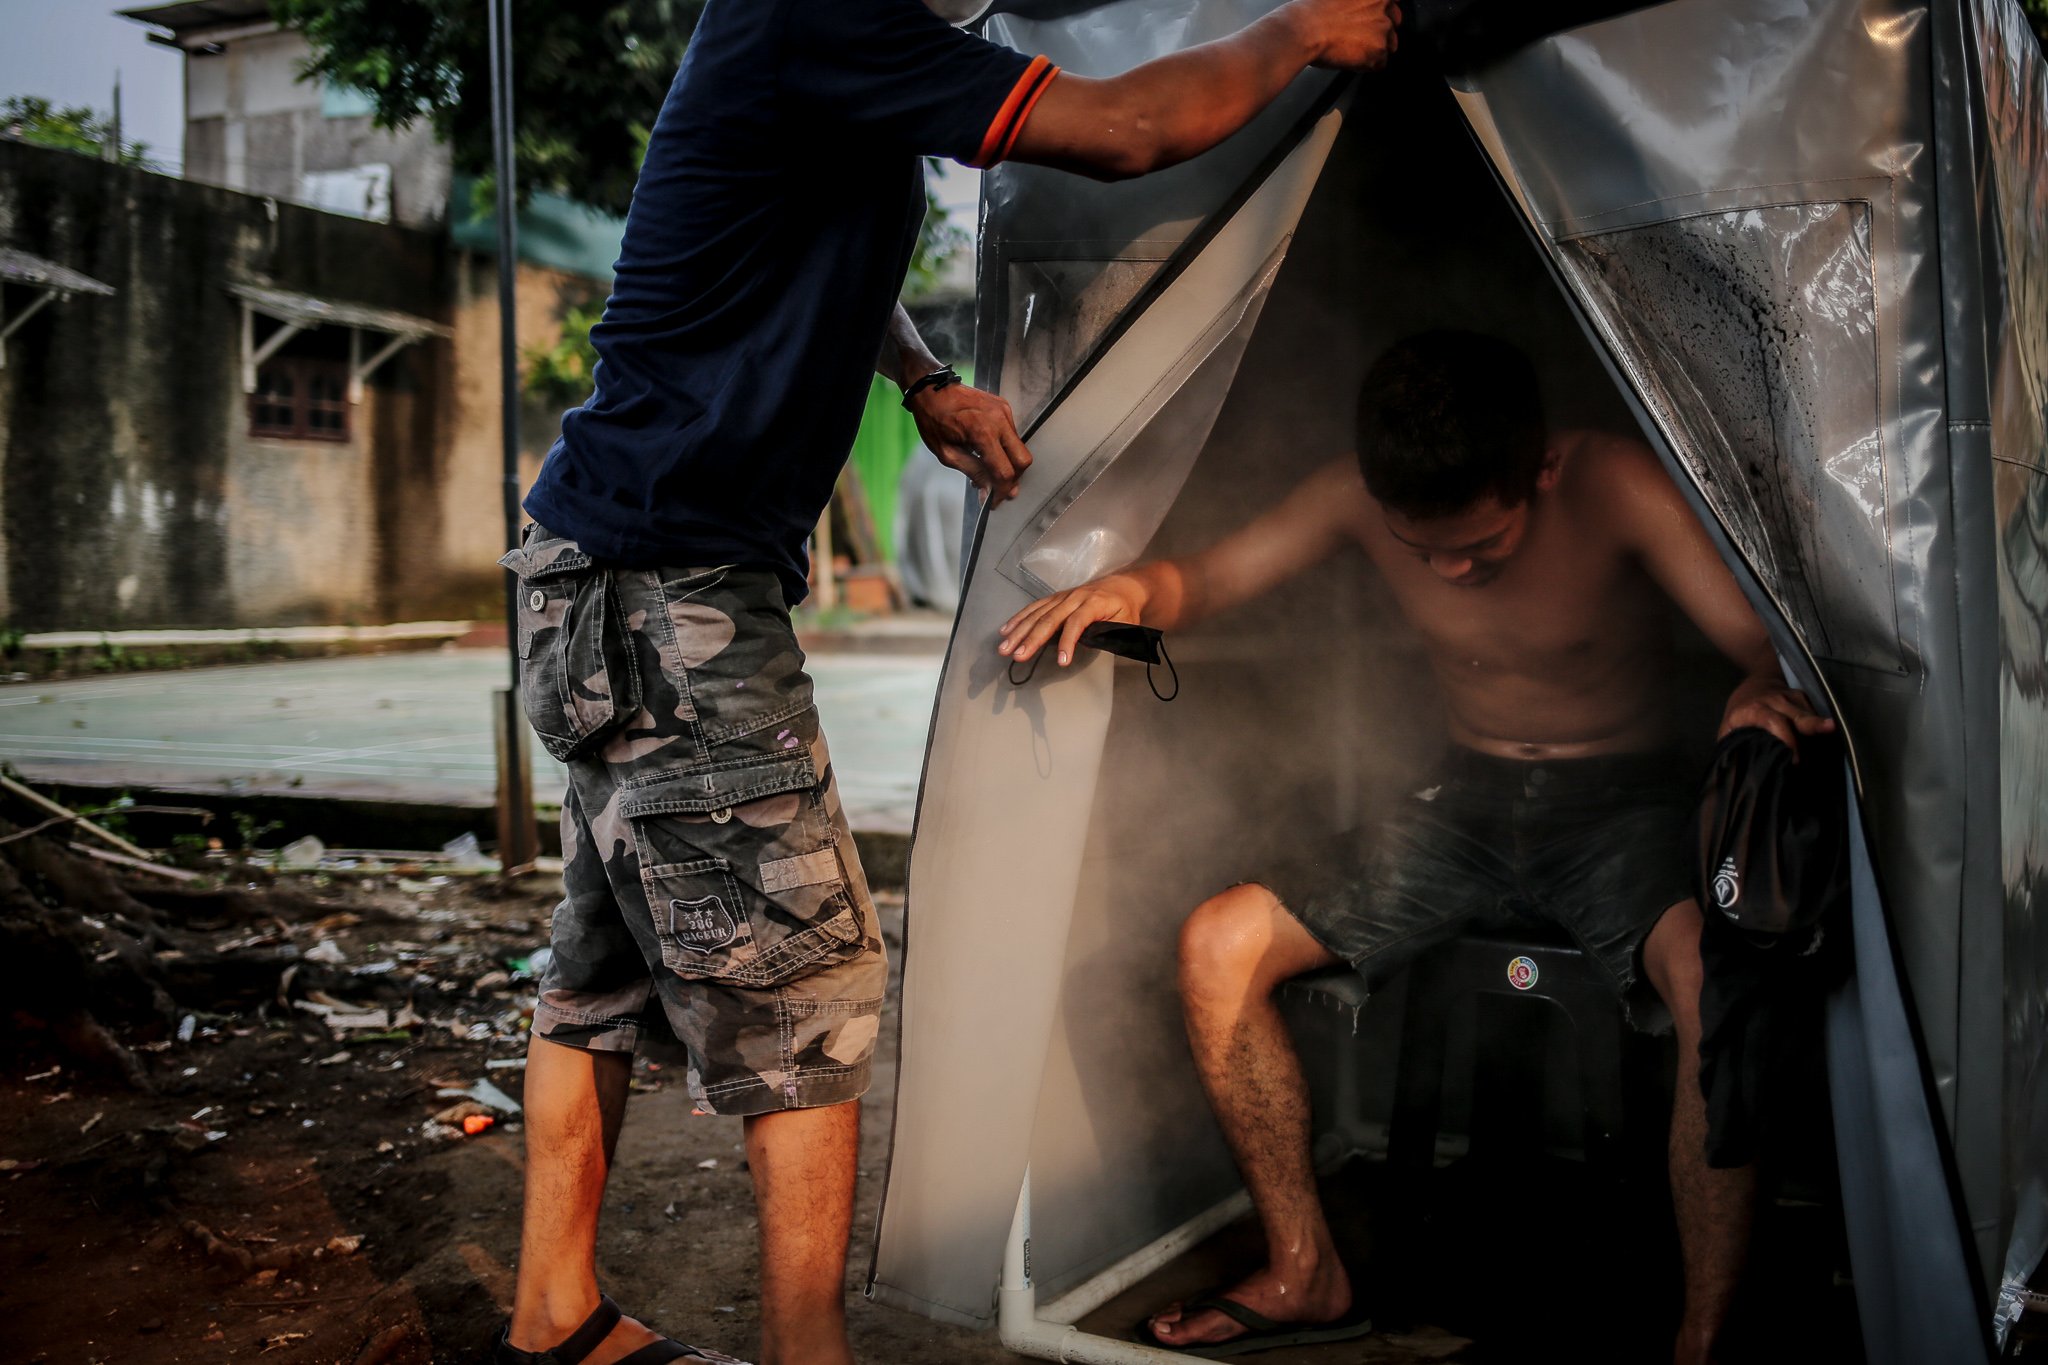 Sejumlah Warga berada di dalam bilik sauna di kawasan Gang Pepaya RT 11 RW 3, Lenteng Agung, Jagakarsa, Jakarta, Senin (19/7/2021). Sauna dengan metode uap dari rebusan rempah-rempah yang dikelola oleh karang taruna setempat itu bertujuan untuk meningkatan imunitas dan kebugaran di tengah meningkatnya kasus COVID-19 di wilayah DKI Jakarta.